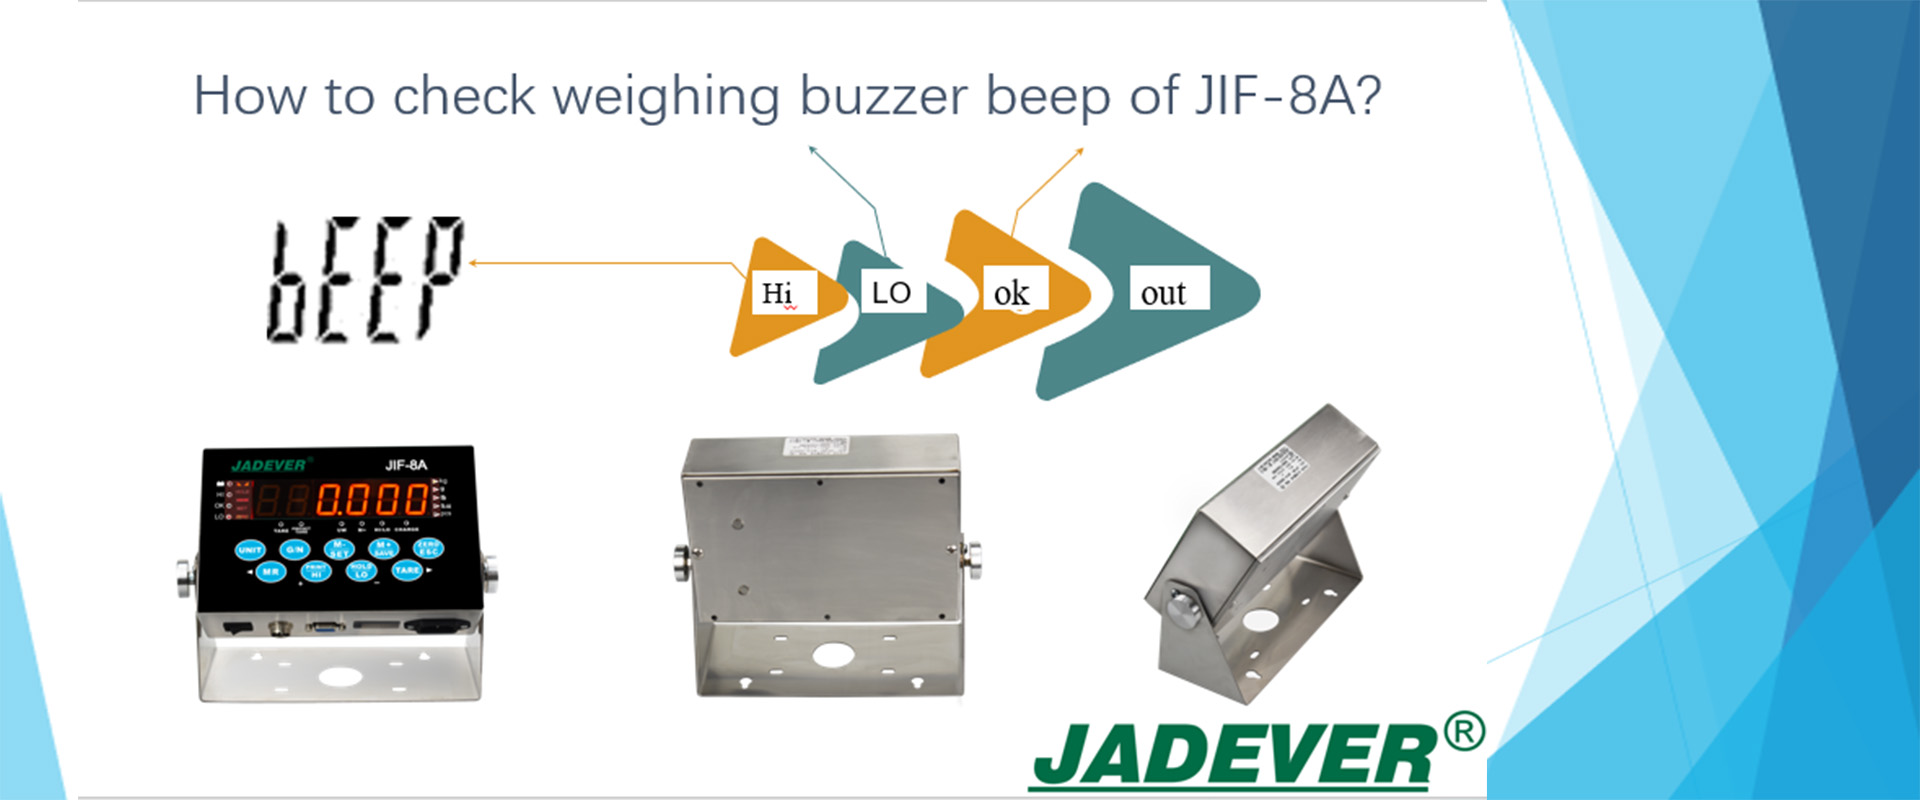 Comment vérifier le bip sonore de pesée du JIF-8A ?
